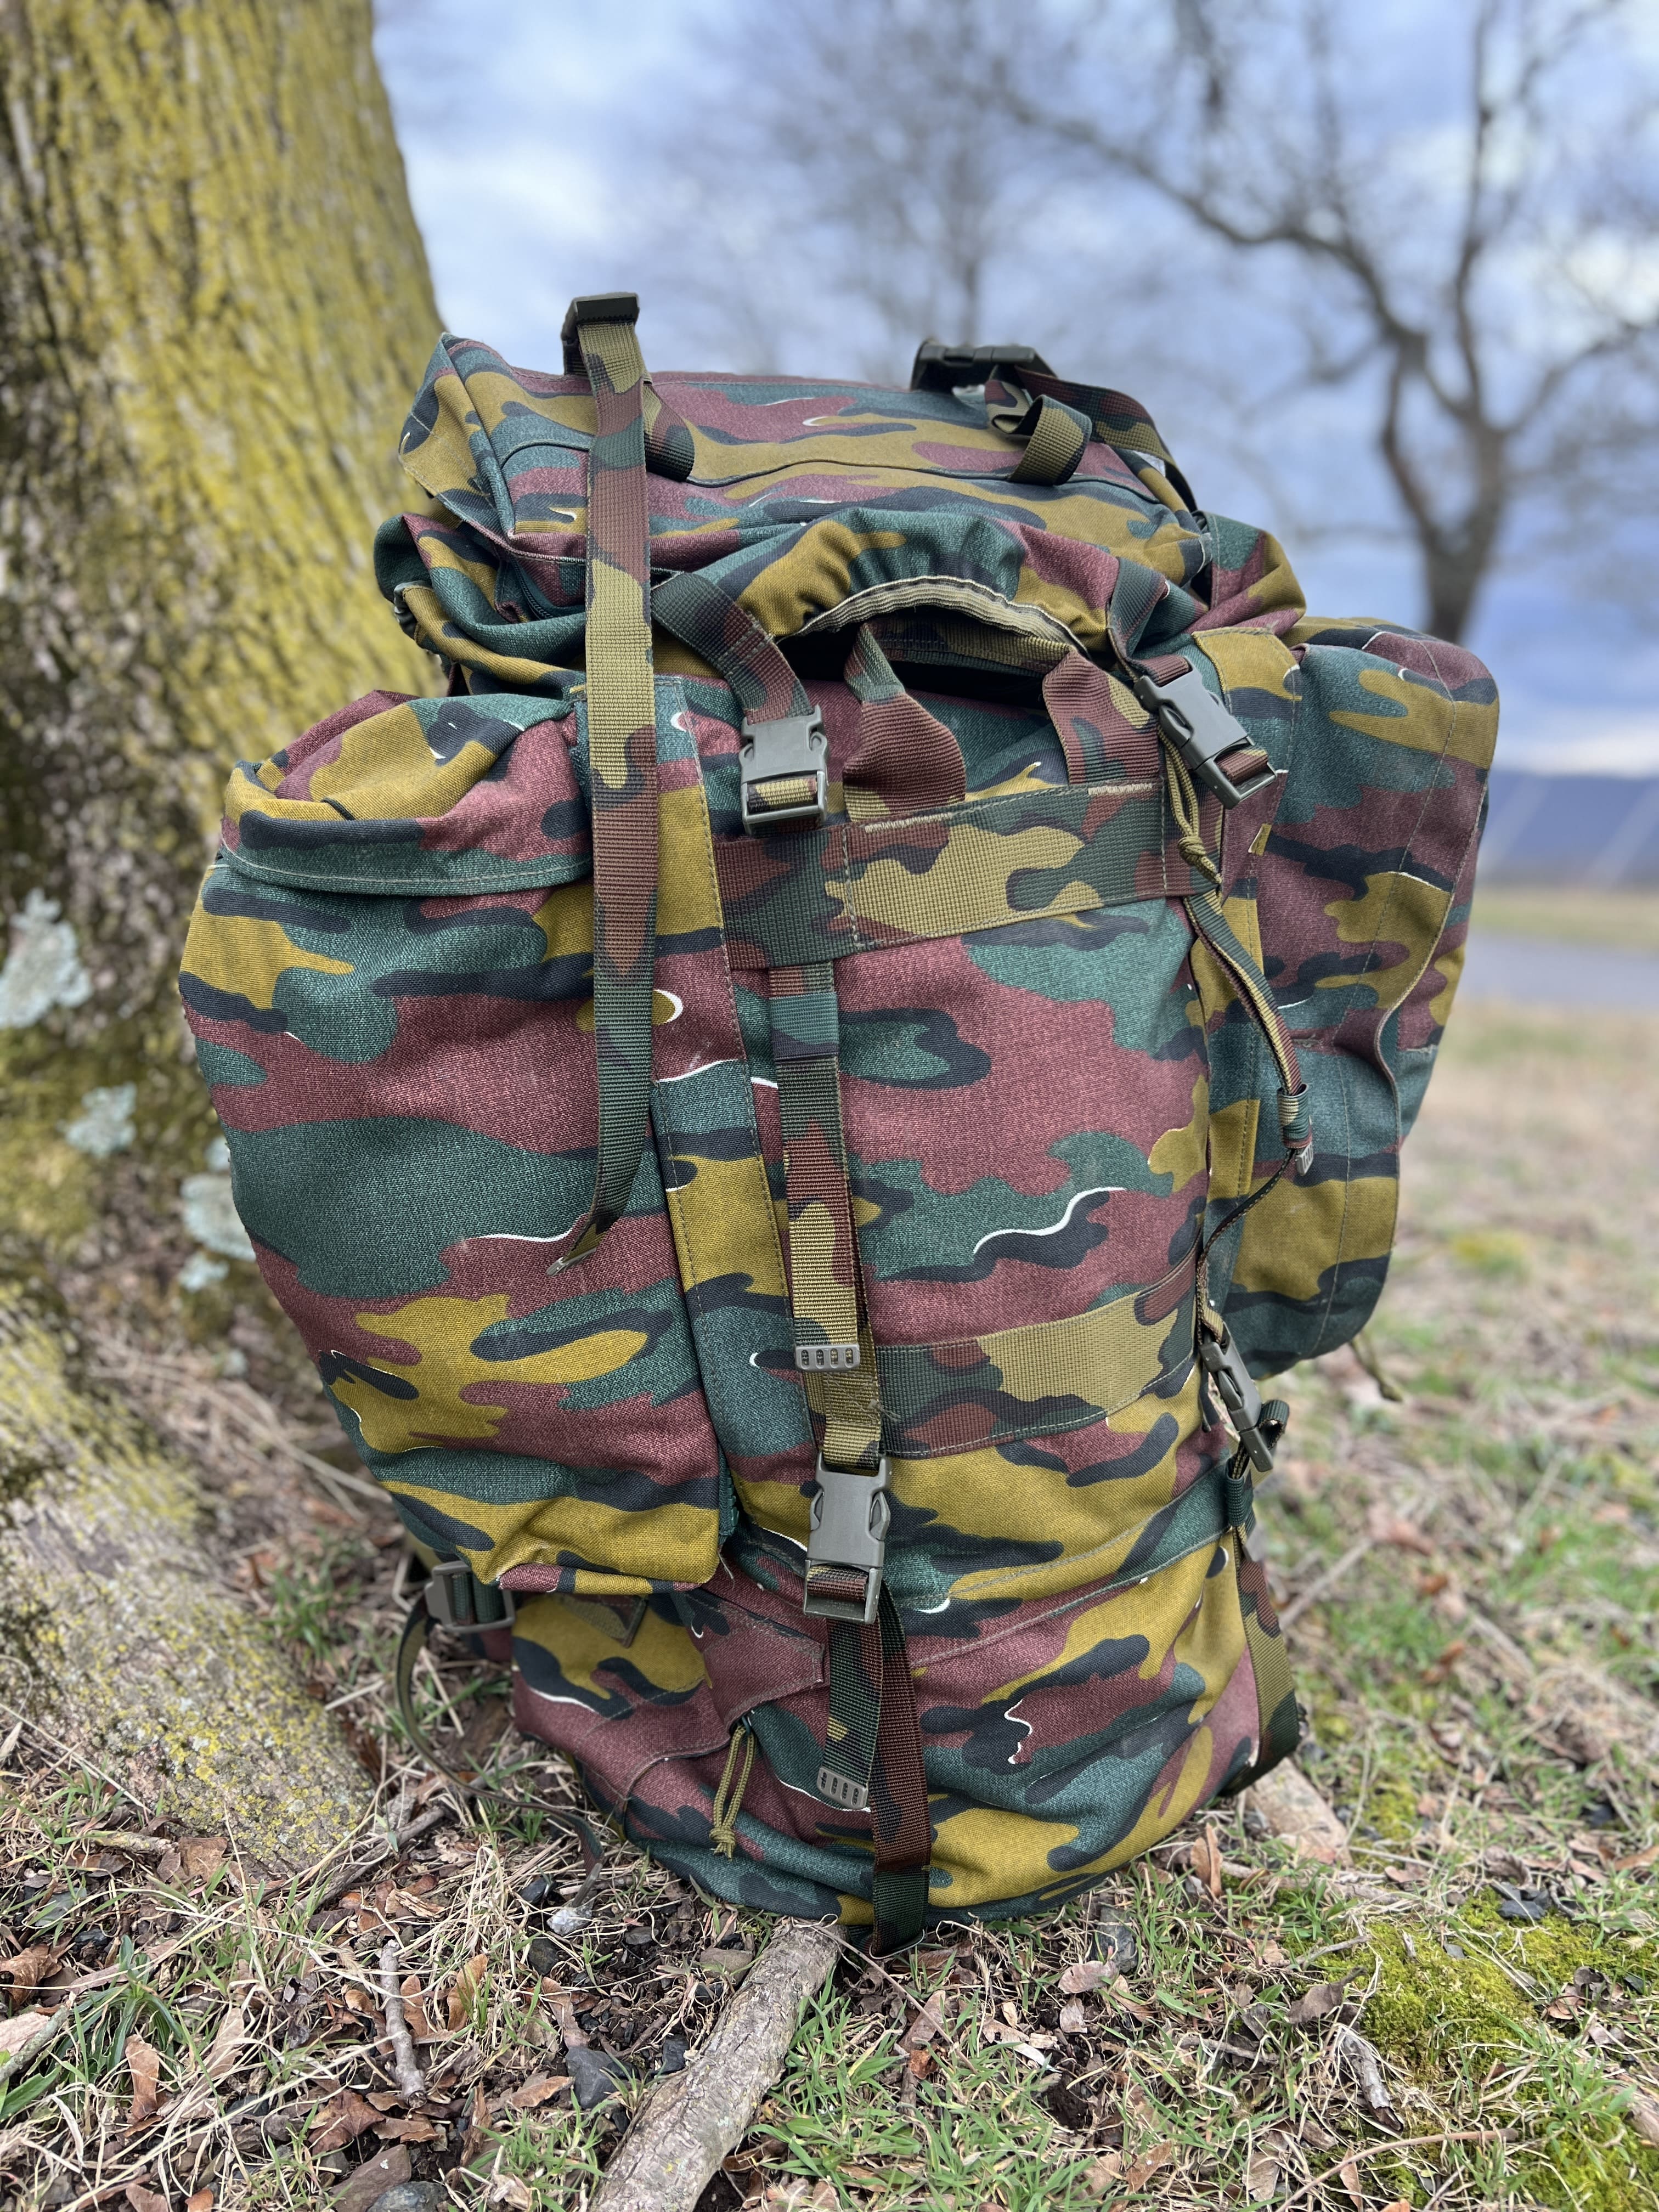 Military Backpacks